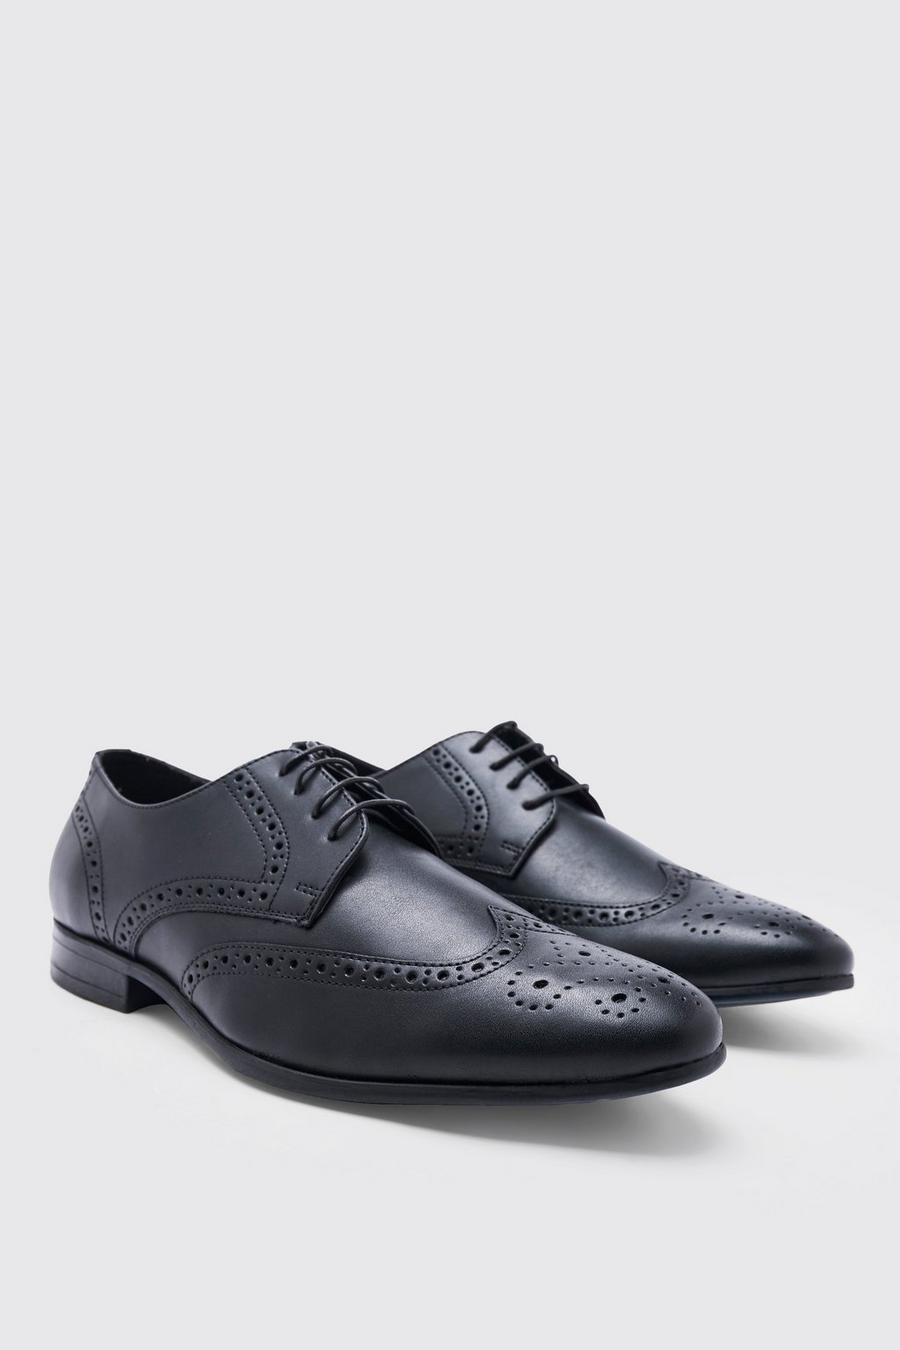 Chaussures style Richelieu en similicuir, Black noir